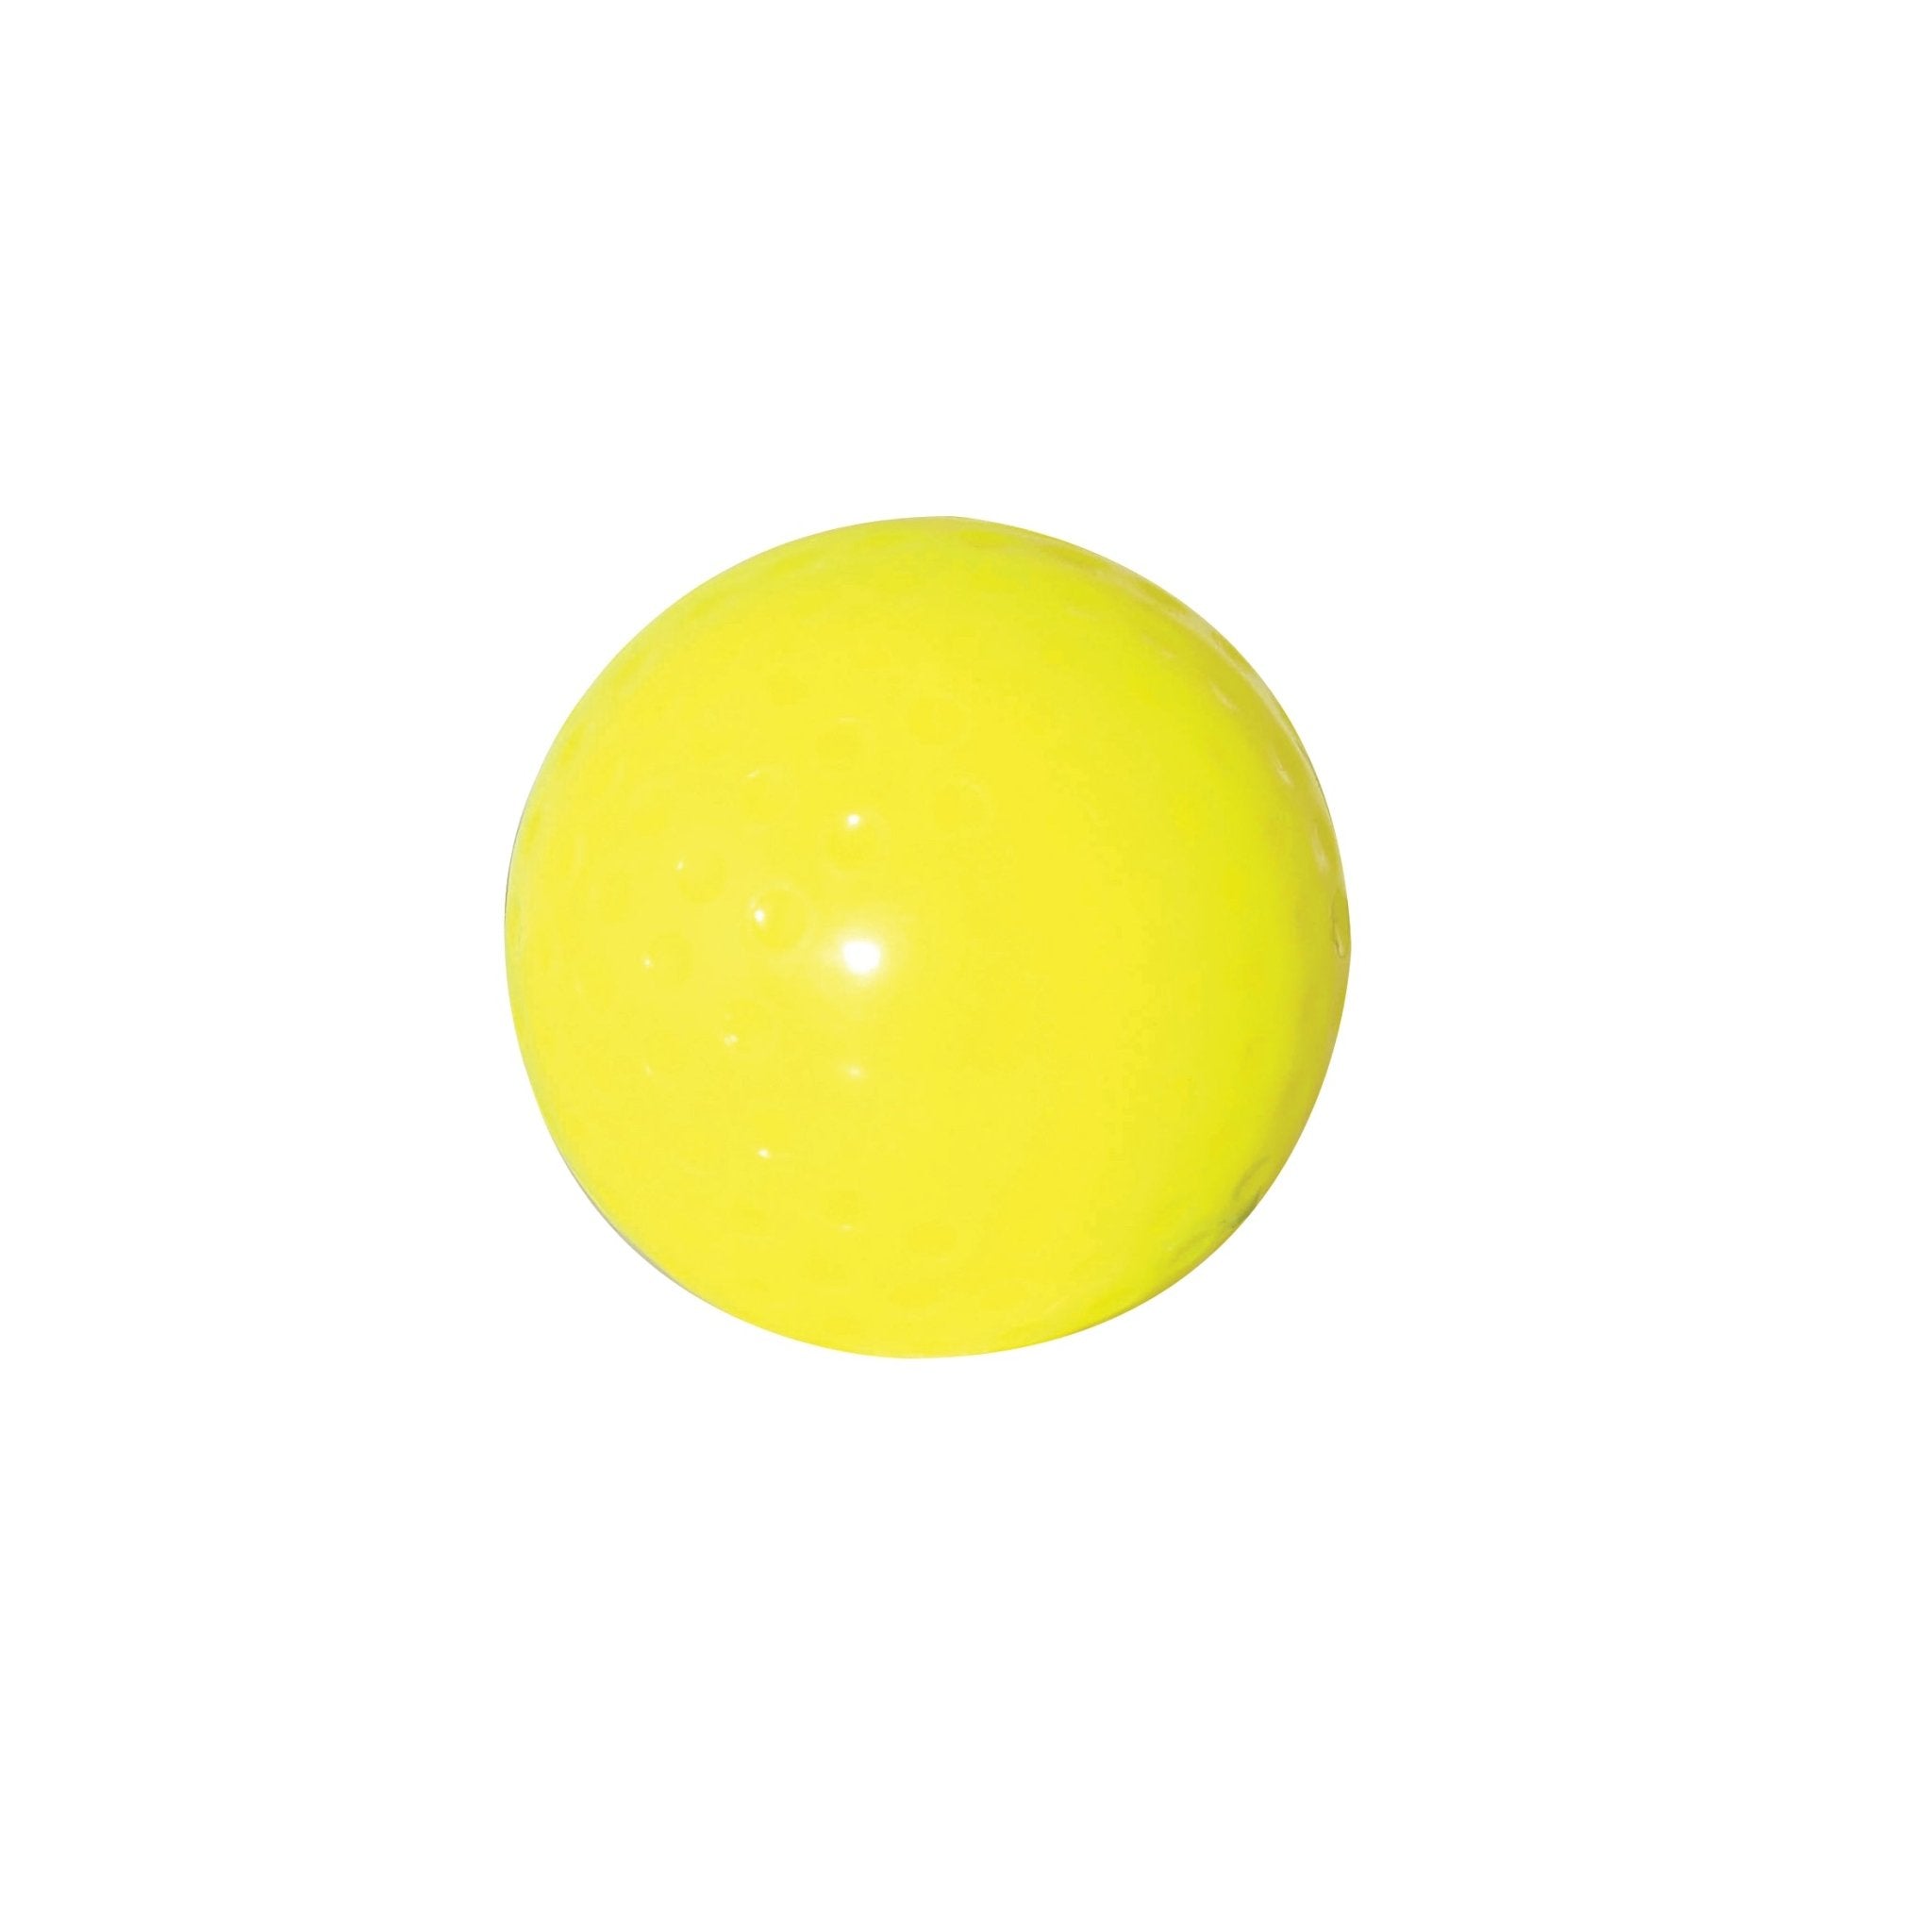 Fusion Hockey Ball - Yellow - Optimum